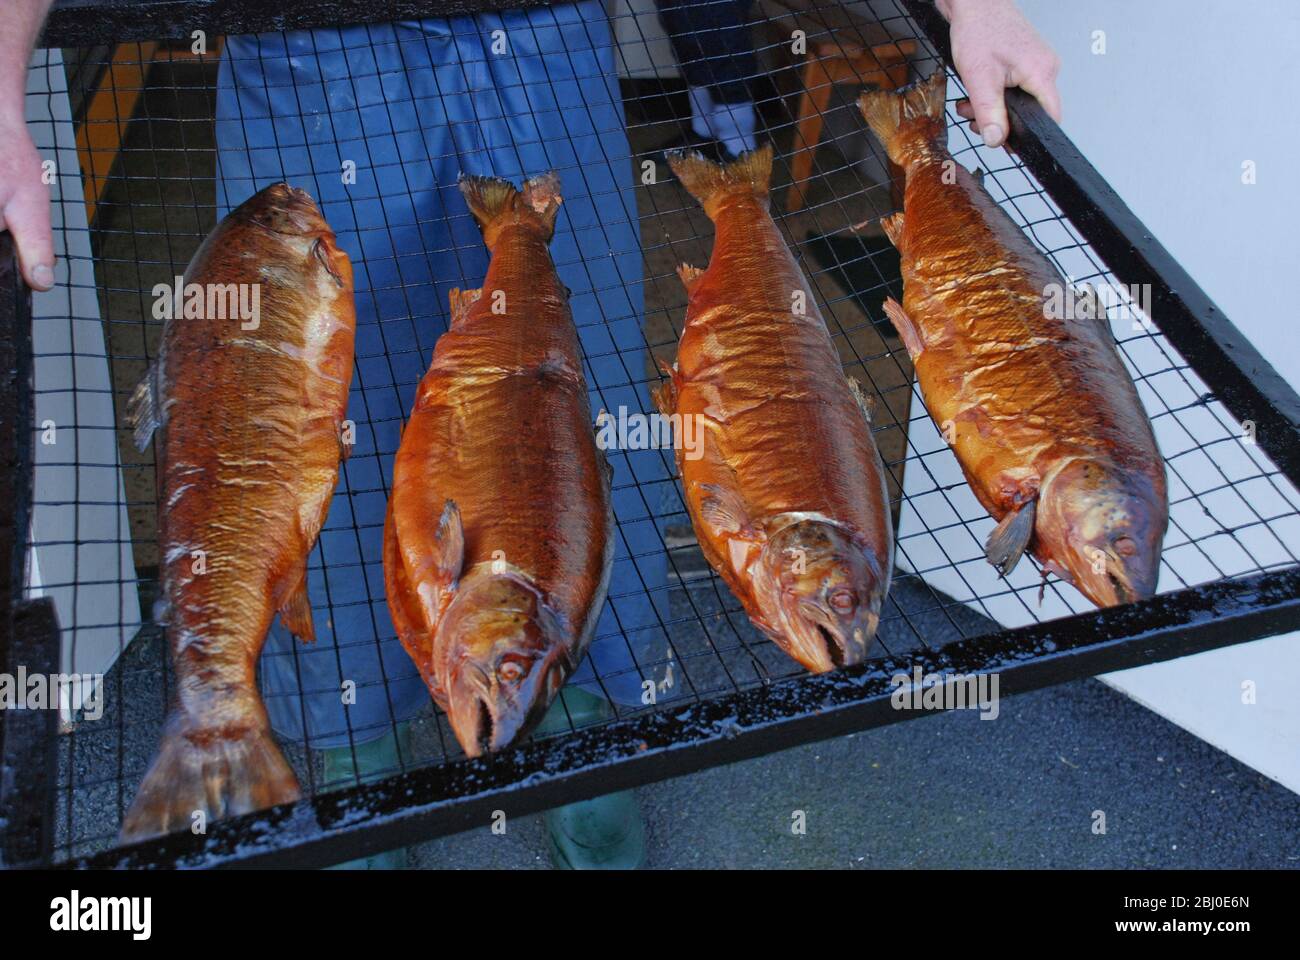 Lachs frisch geräuchert in der Fischräucherei in Donsa, Schweden. Norwegischer Fjordlachs wird nach dem Übersalzen kalt über Erlenholzspänen geräuchert Stockfoto